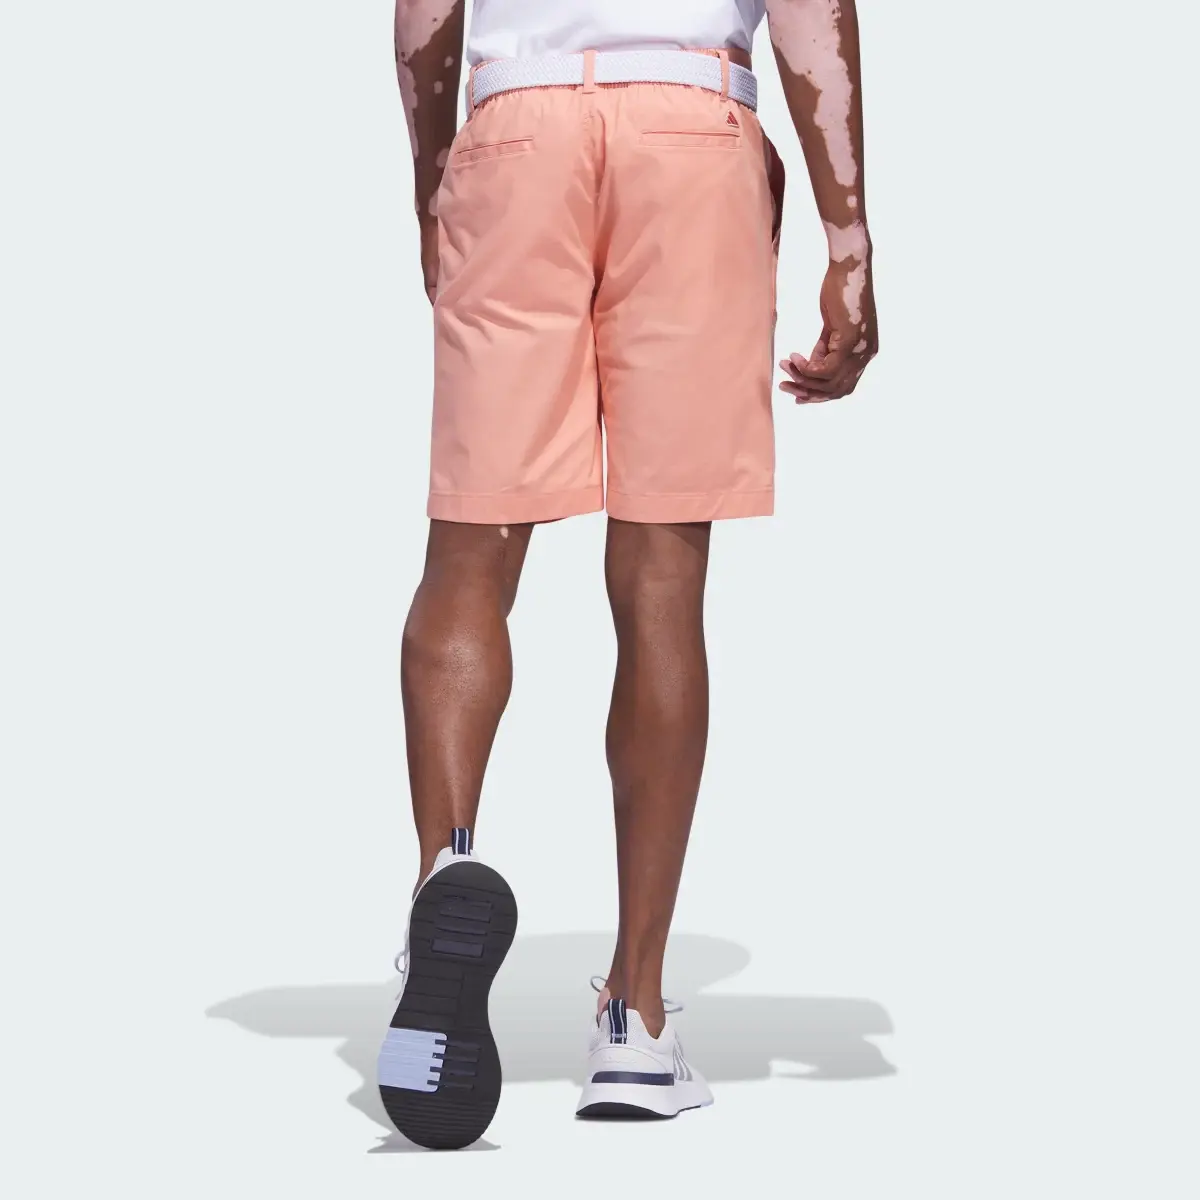 Adidas Go-To 9-Inch Golf Shorts. 2